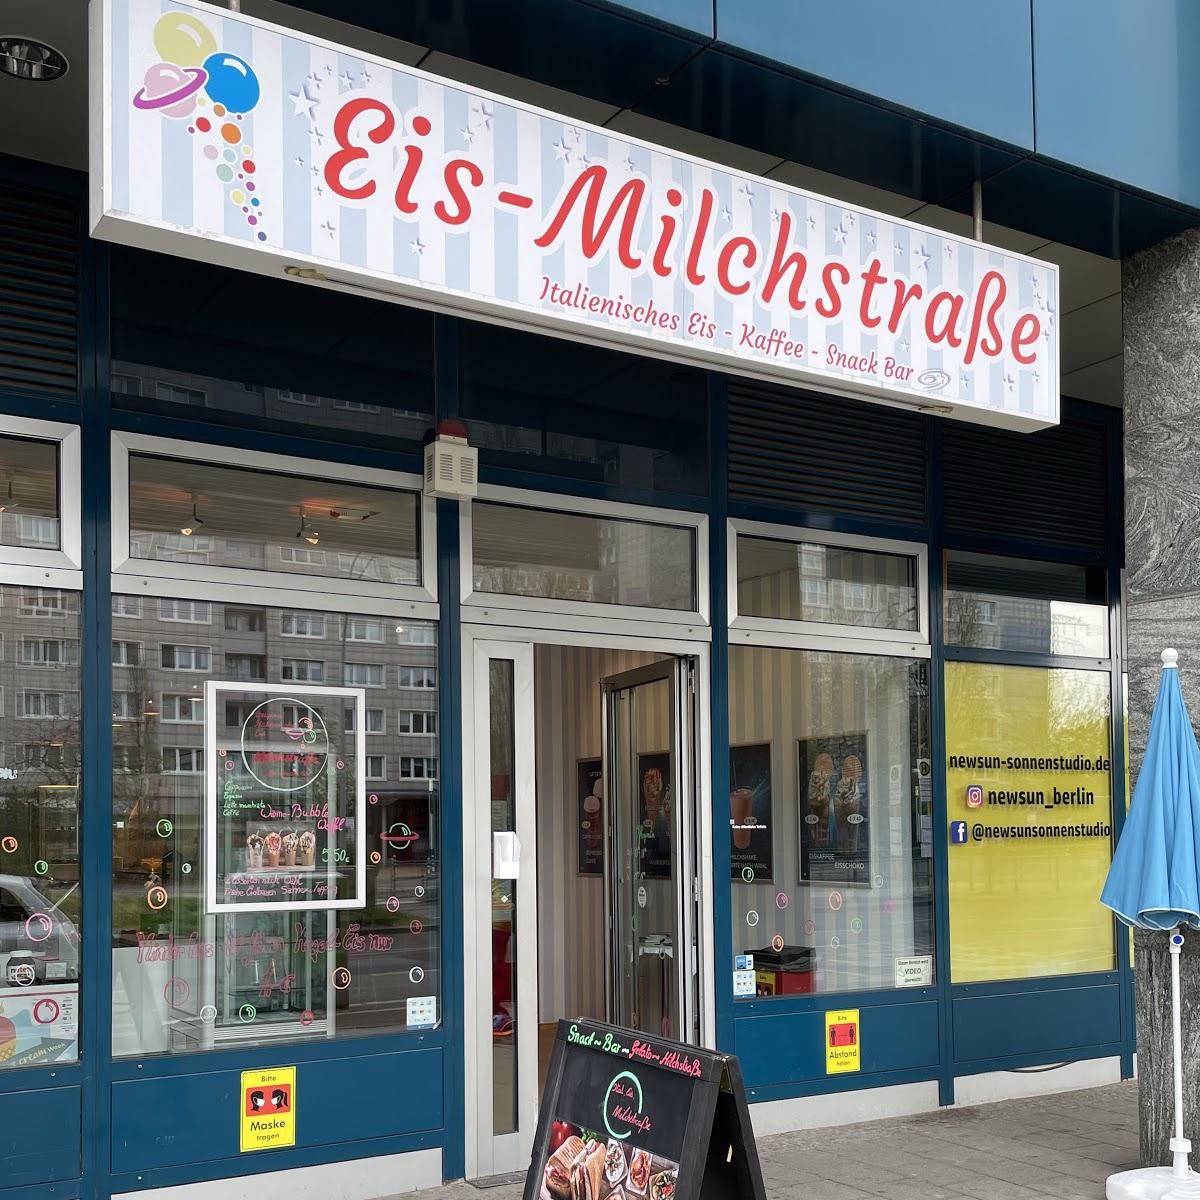 Restaurant "Gelato Milchstraße" in Berlin